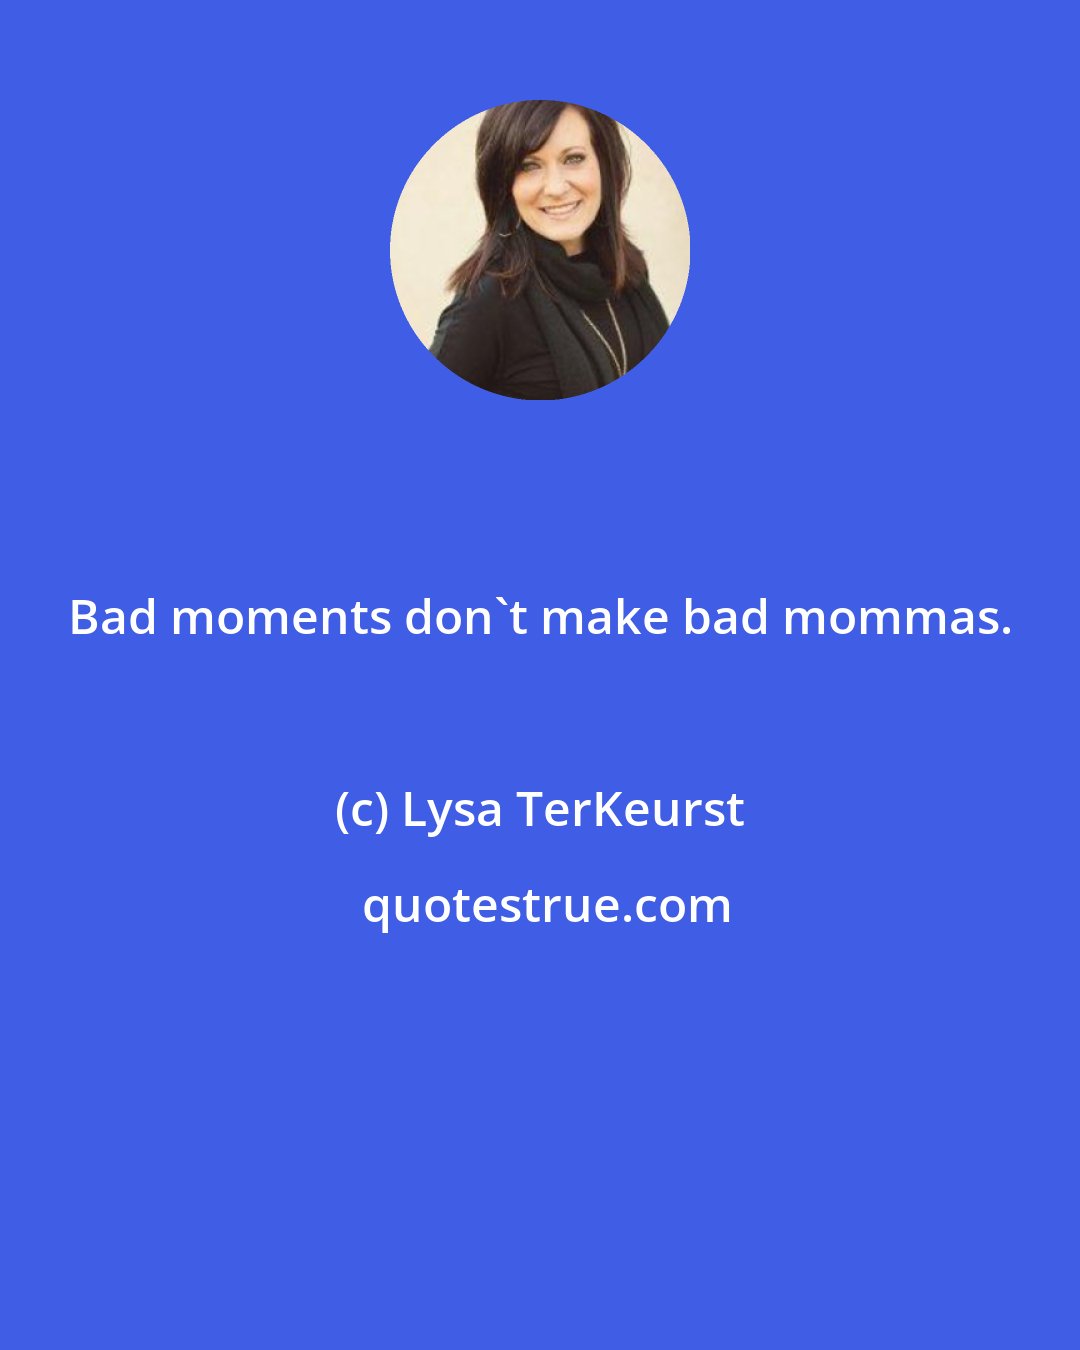 Lysa TerKeurst: Bad moments don't make bad mommas.